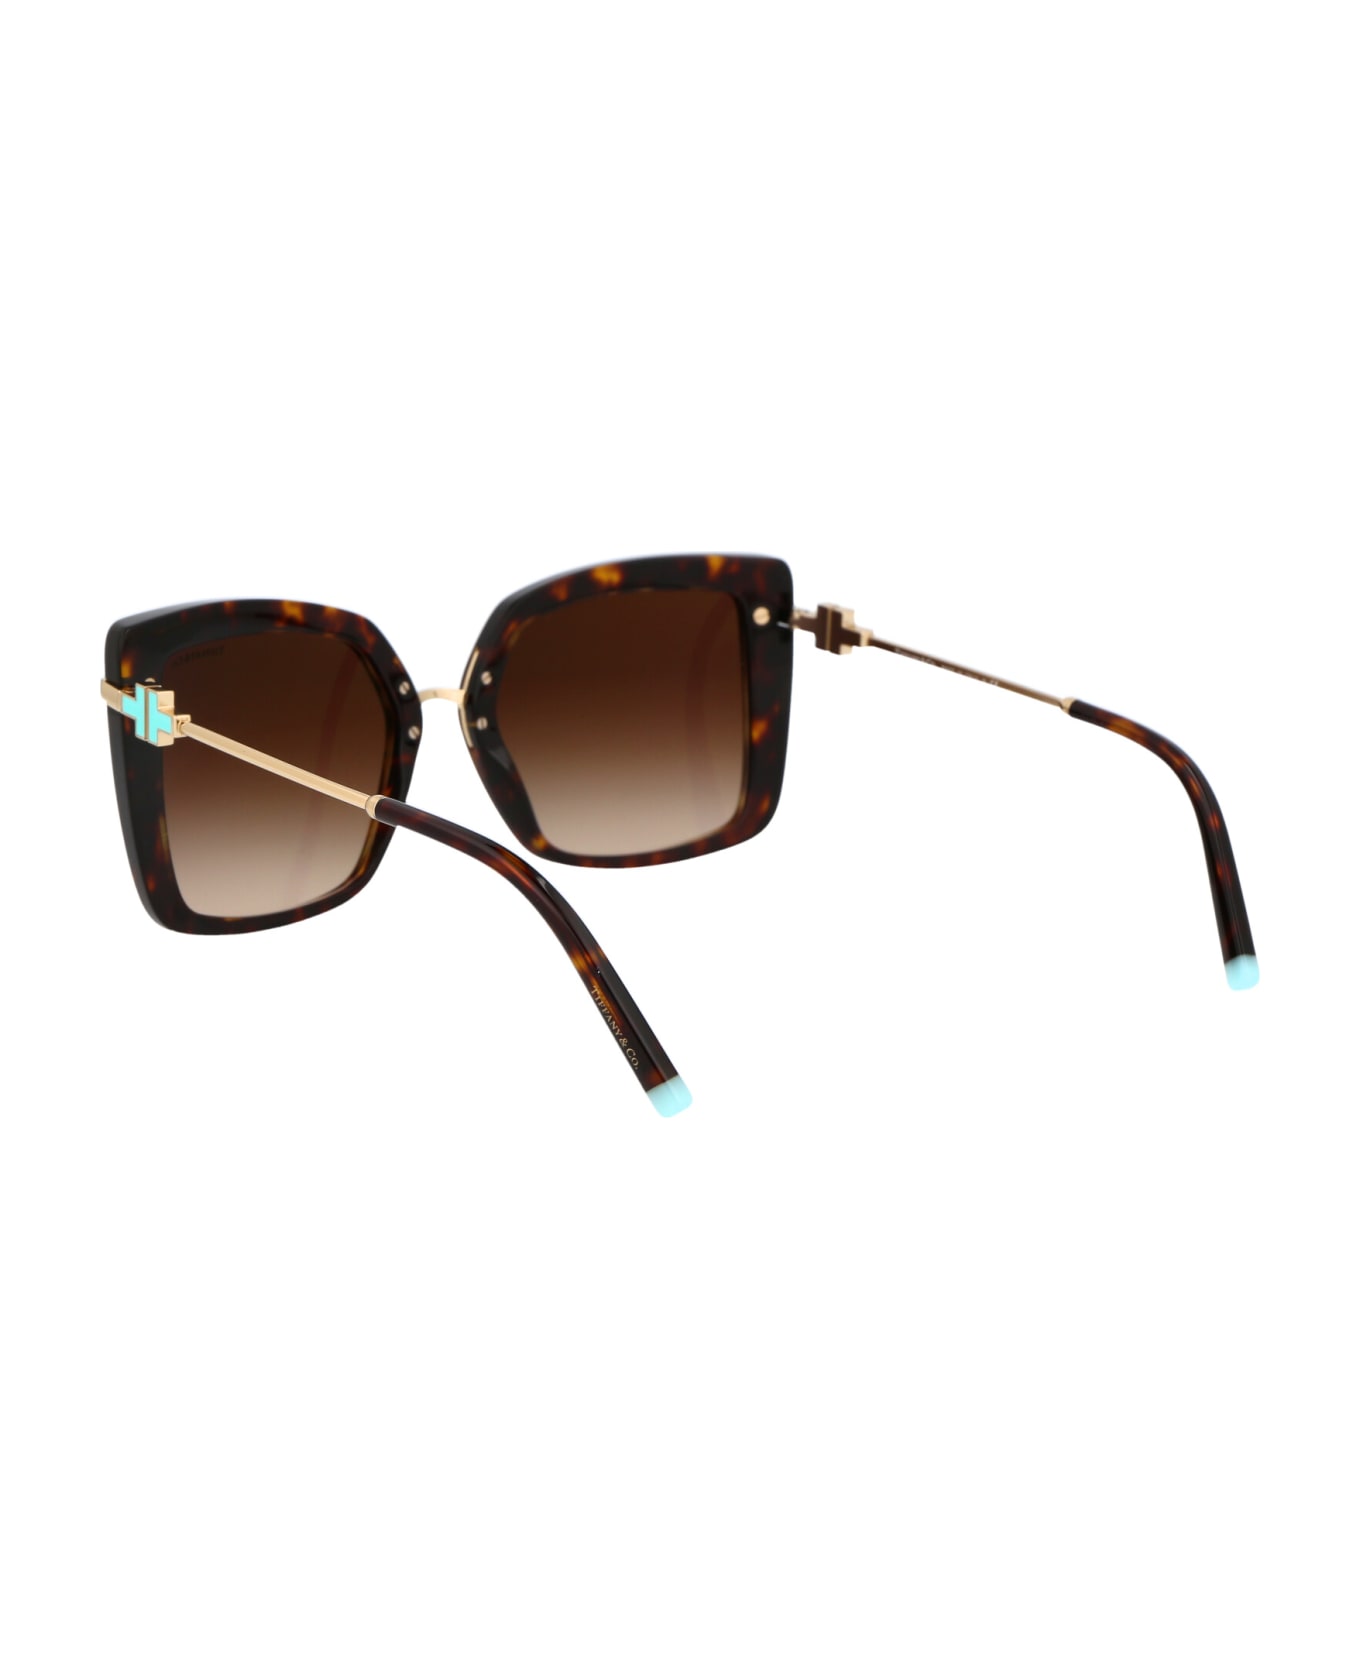 Tiffany & Co. 0tf4185 Sunglasses - 80153B Havana サングラス